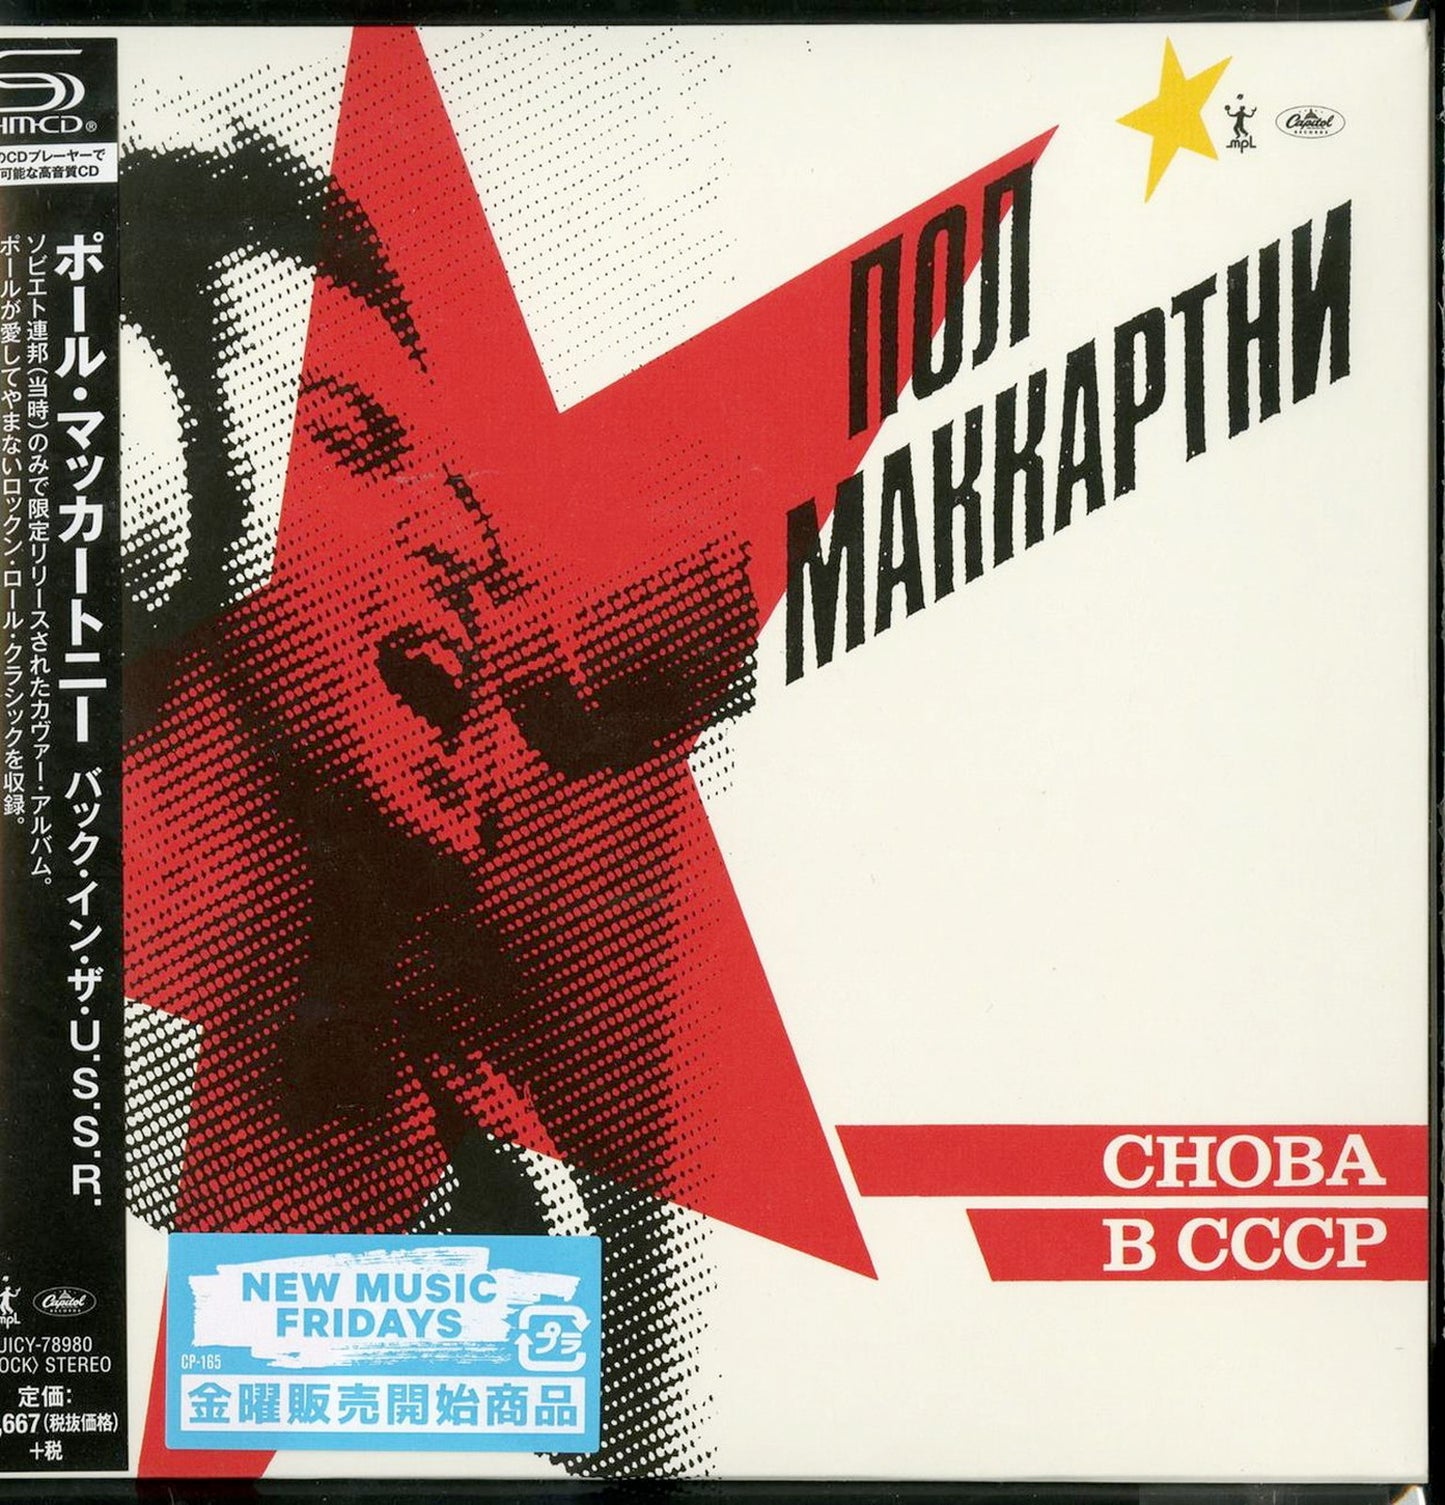 Choba B CCCP (CD)